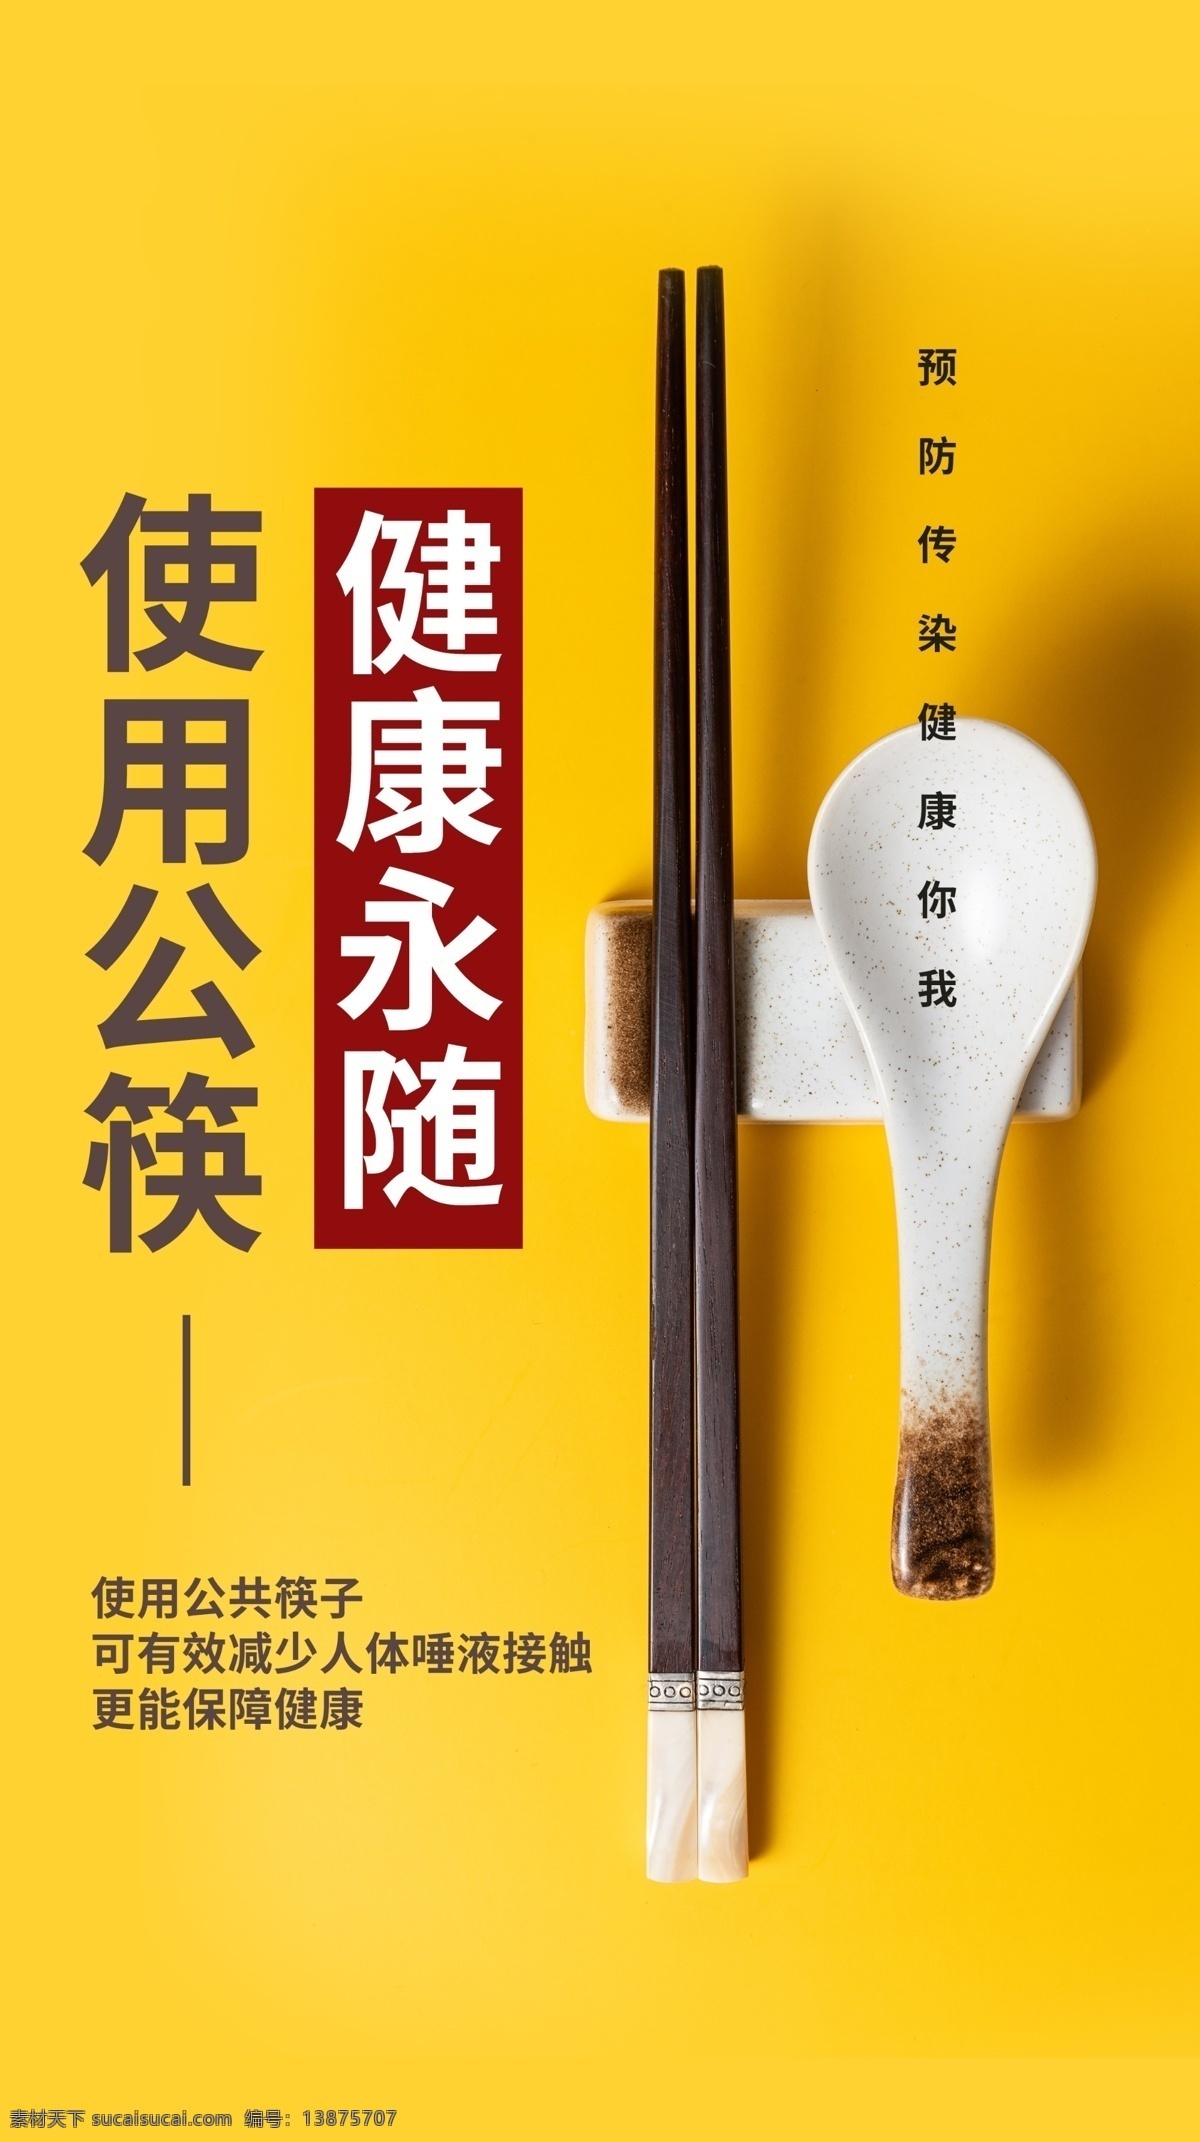 公 勺 筷 社会 公益活动 海报 素材图片 公勺公筷 公益 活动 宣传